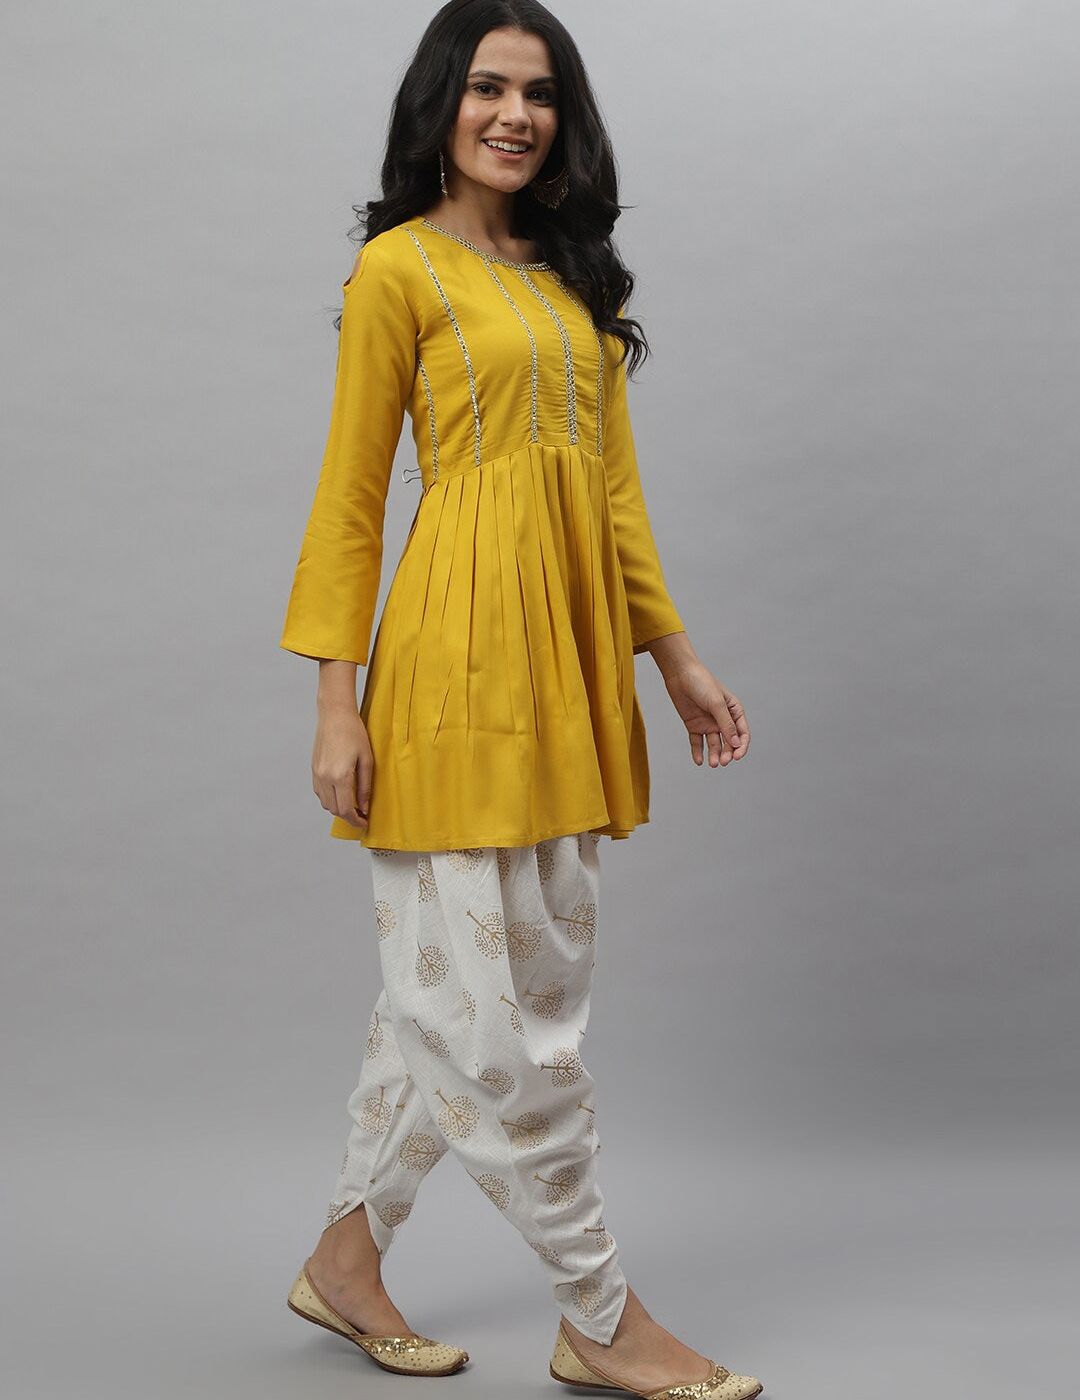 Affordable Indian Dresses